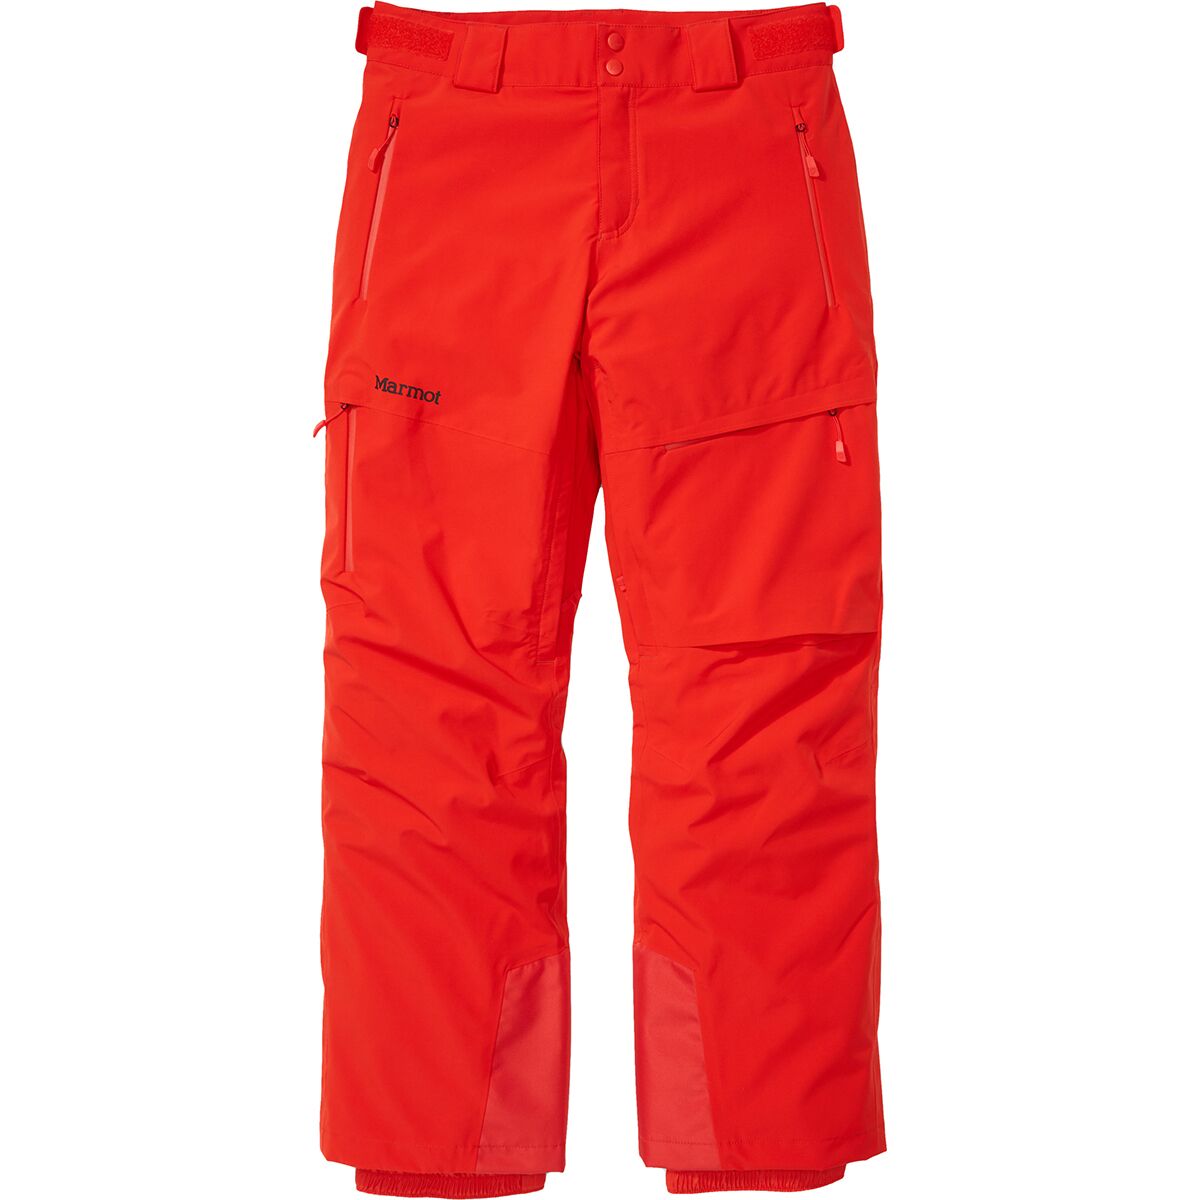 Marmot Layout Cargo Pant - Men's - Clothing